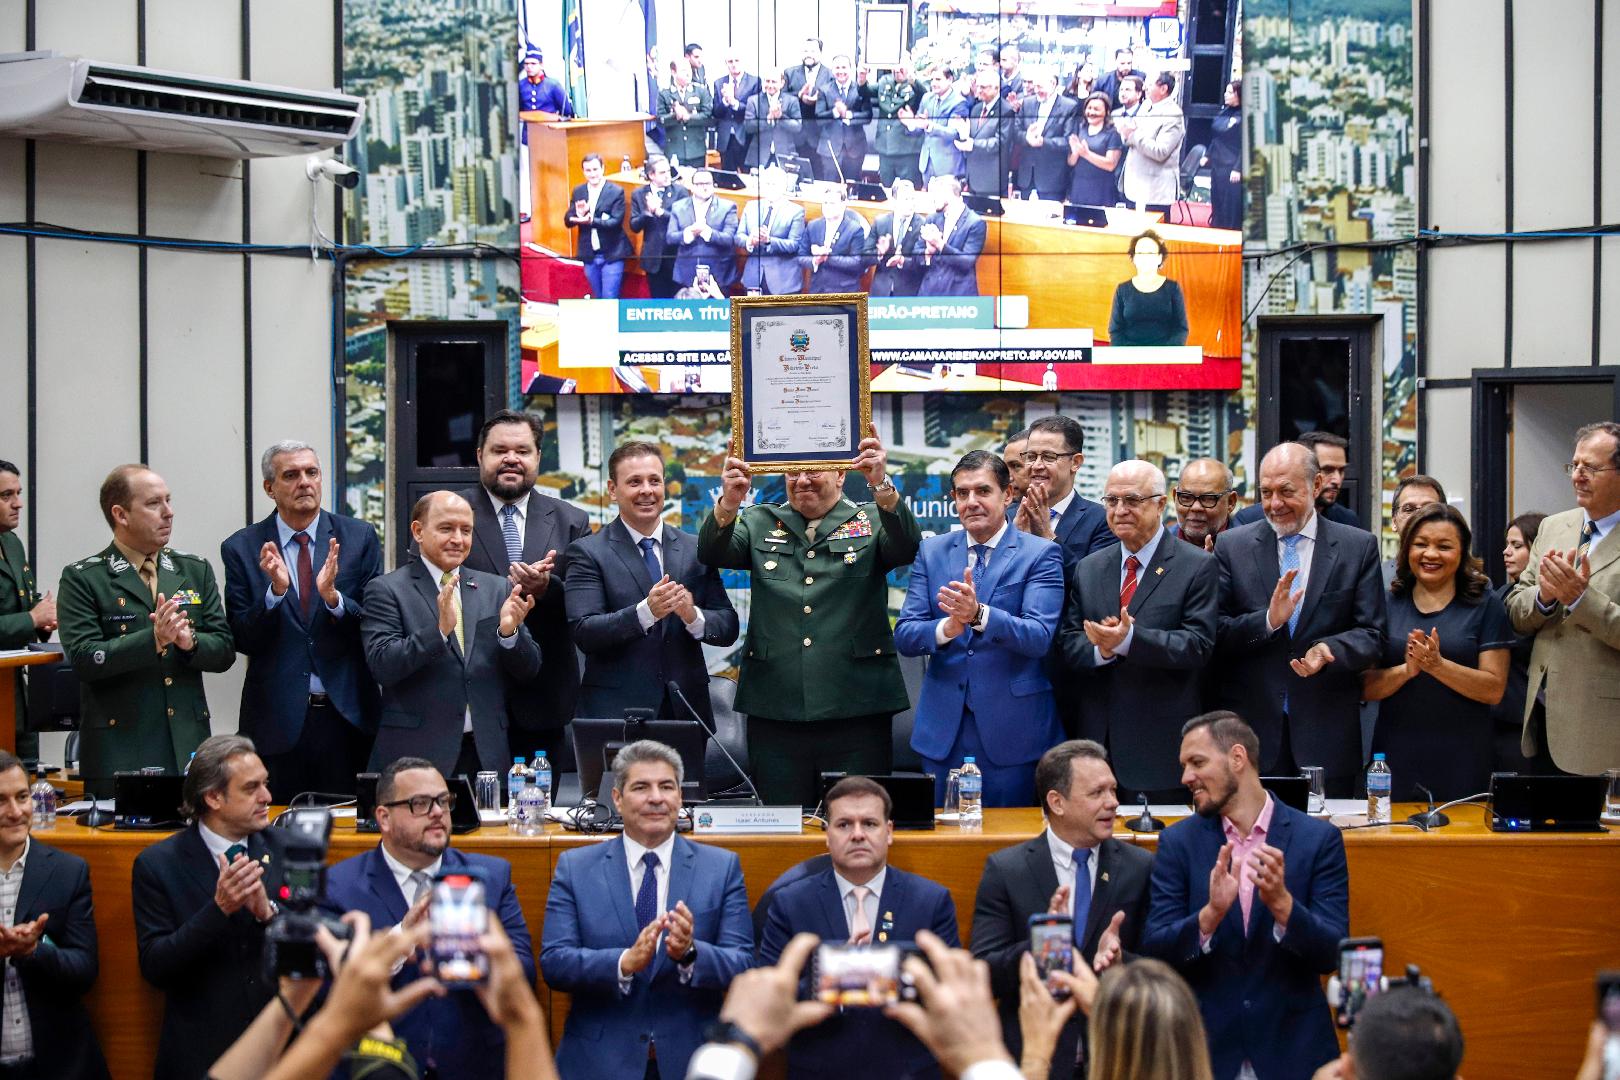 Título de cidadão Ribeirão-Pretano é entregue ao General de Exército